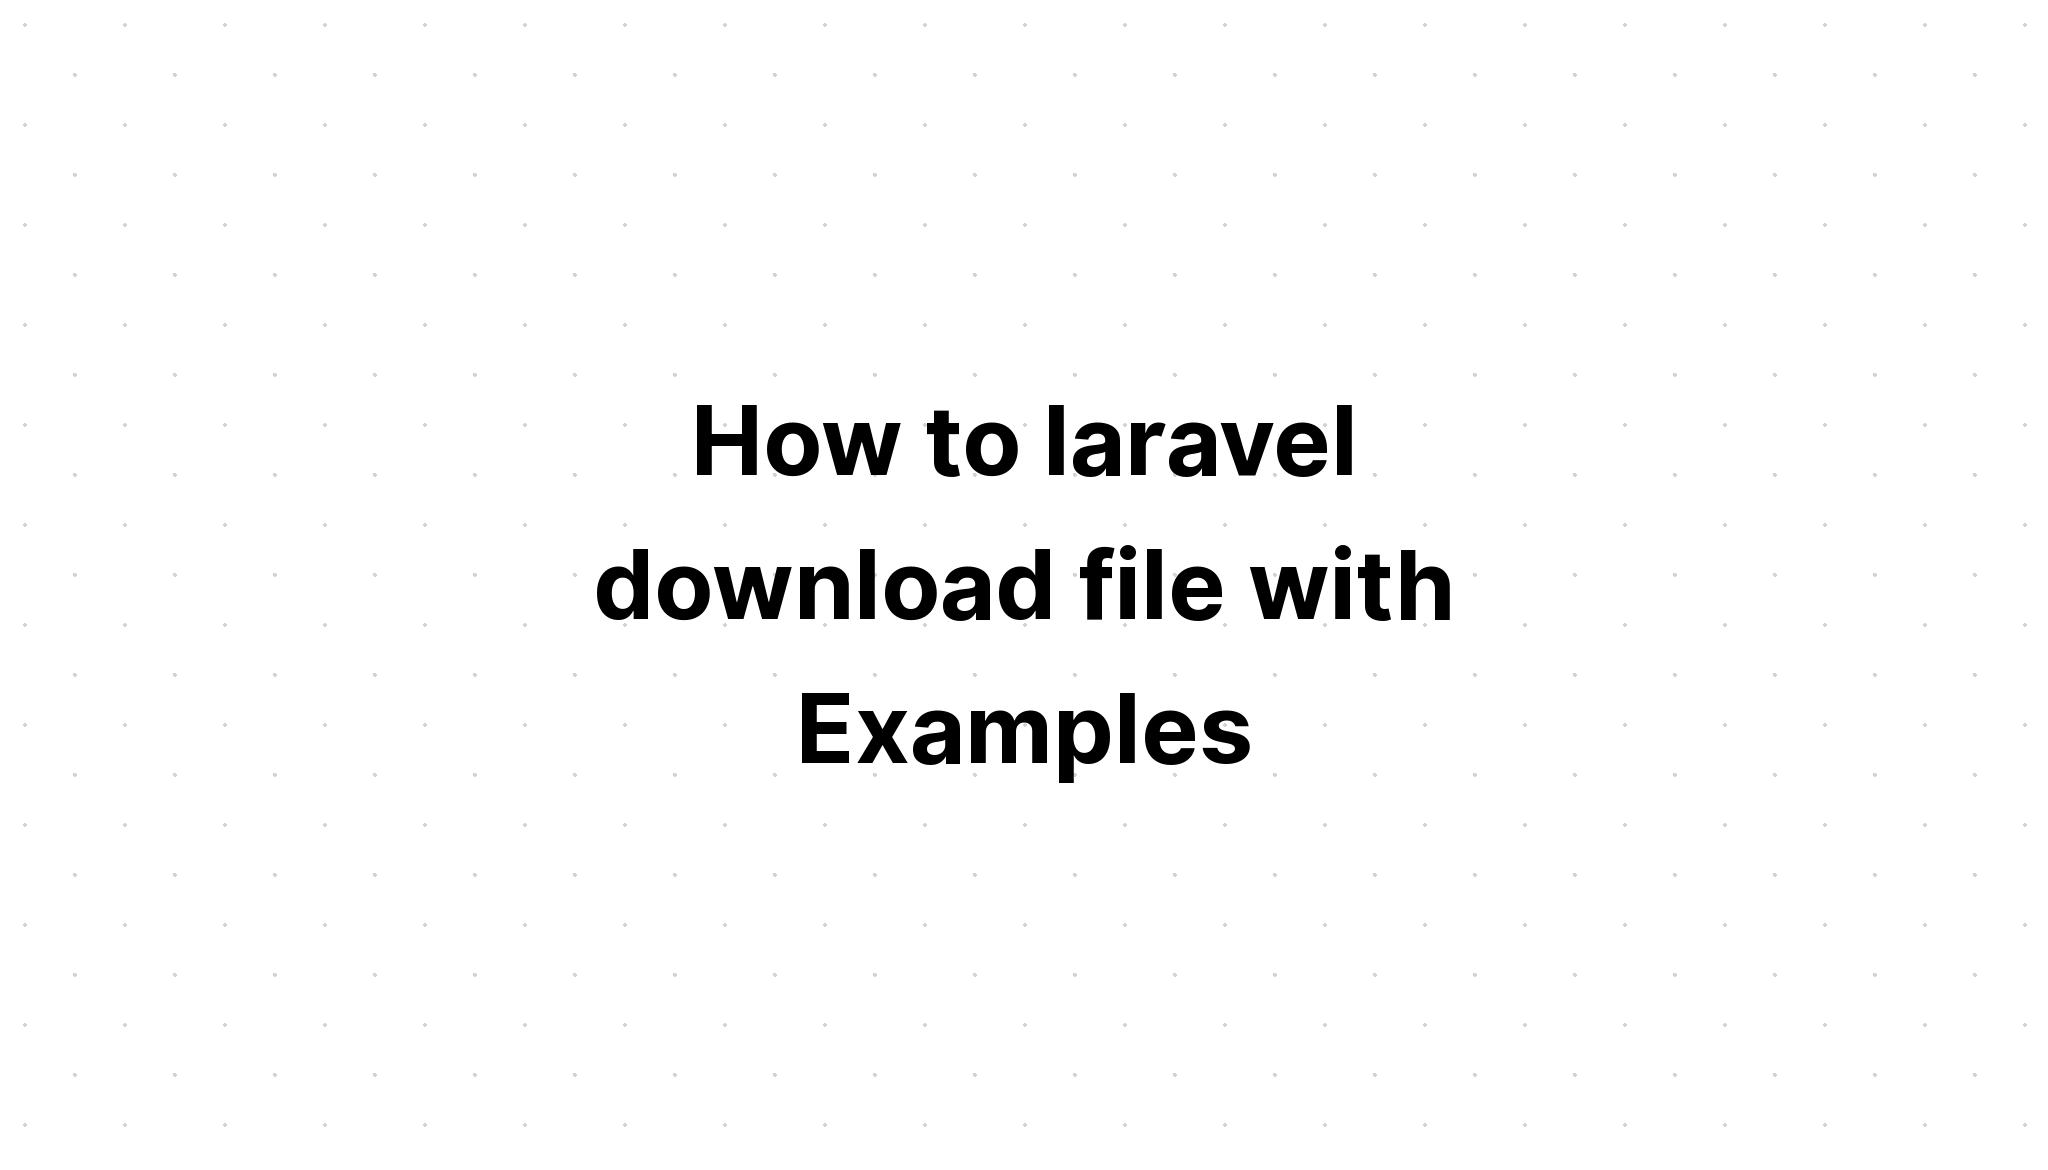 Cách tải xuống tệp laravel với Ví dụ